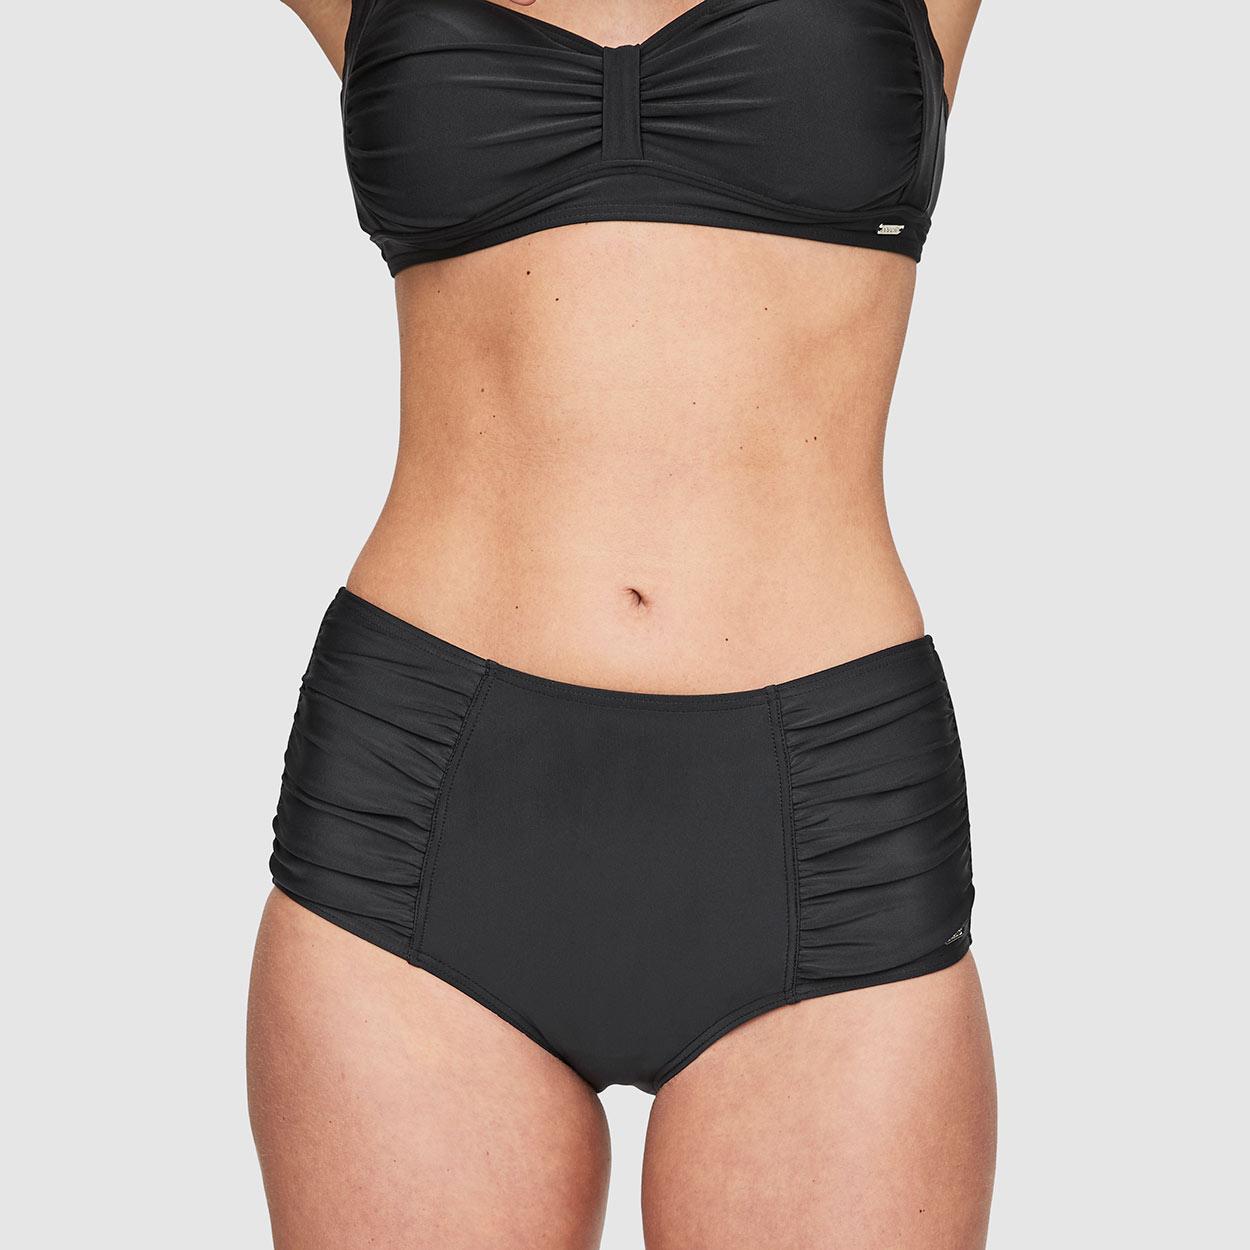 Abecitas Bikini-Oberteil mit Bügel Modell Capri Unique in Farbe schwarz - Vorderansicht mit Maxislpi